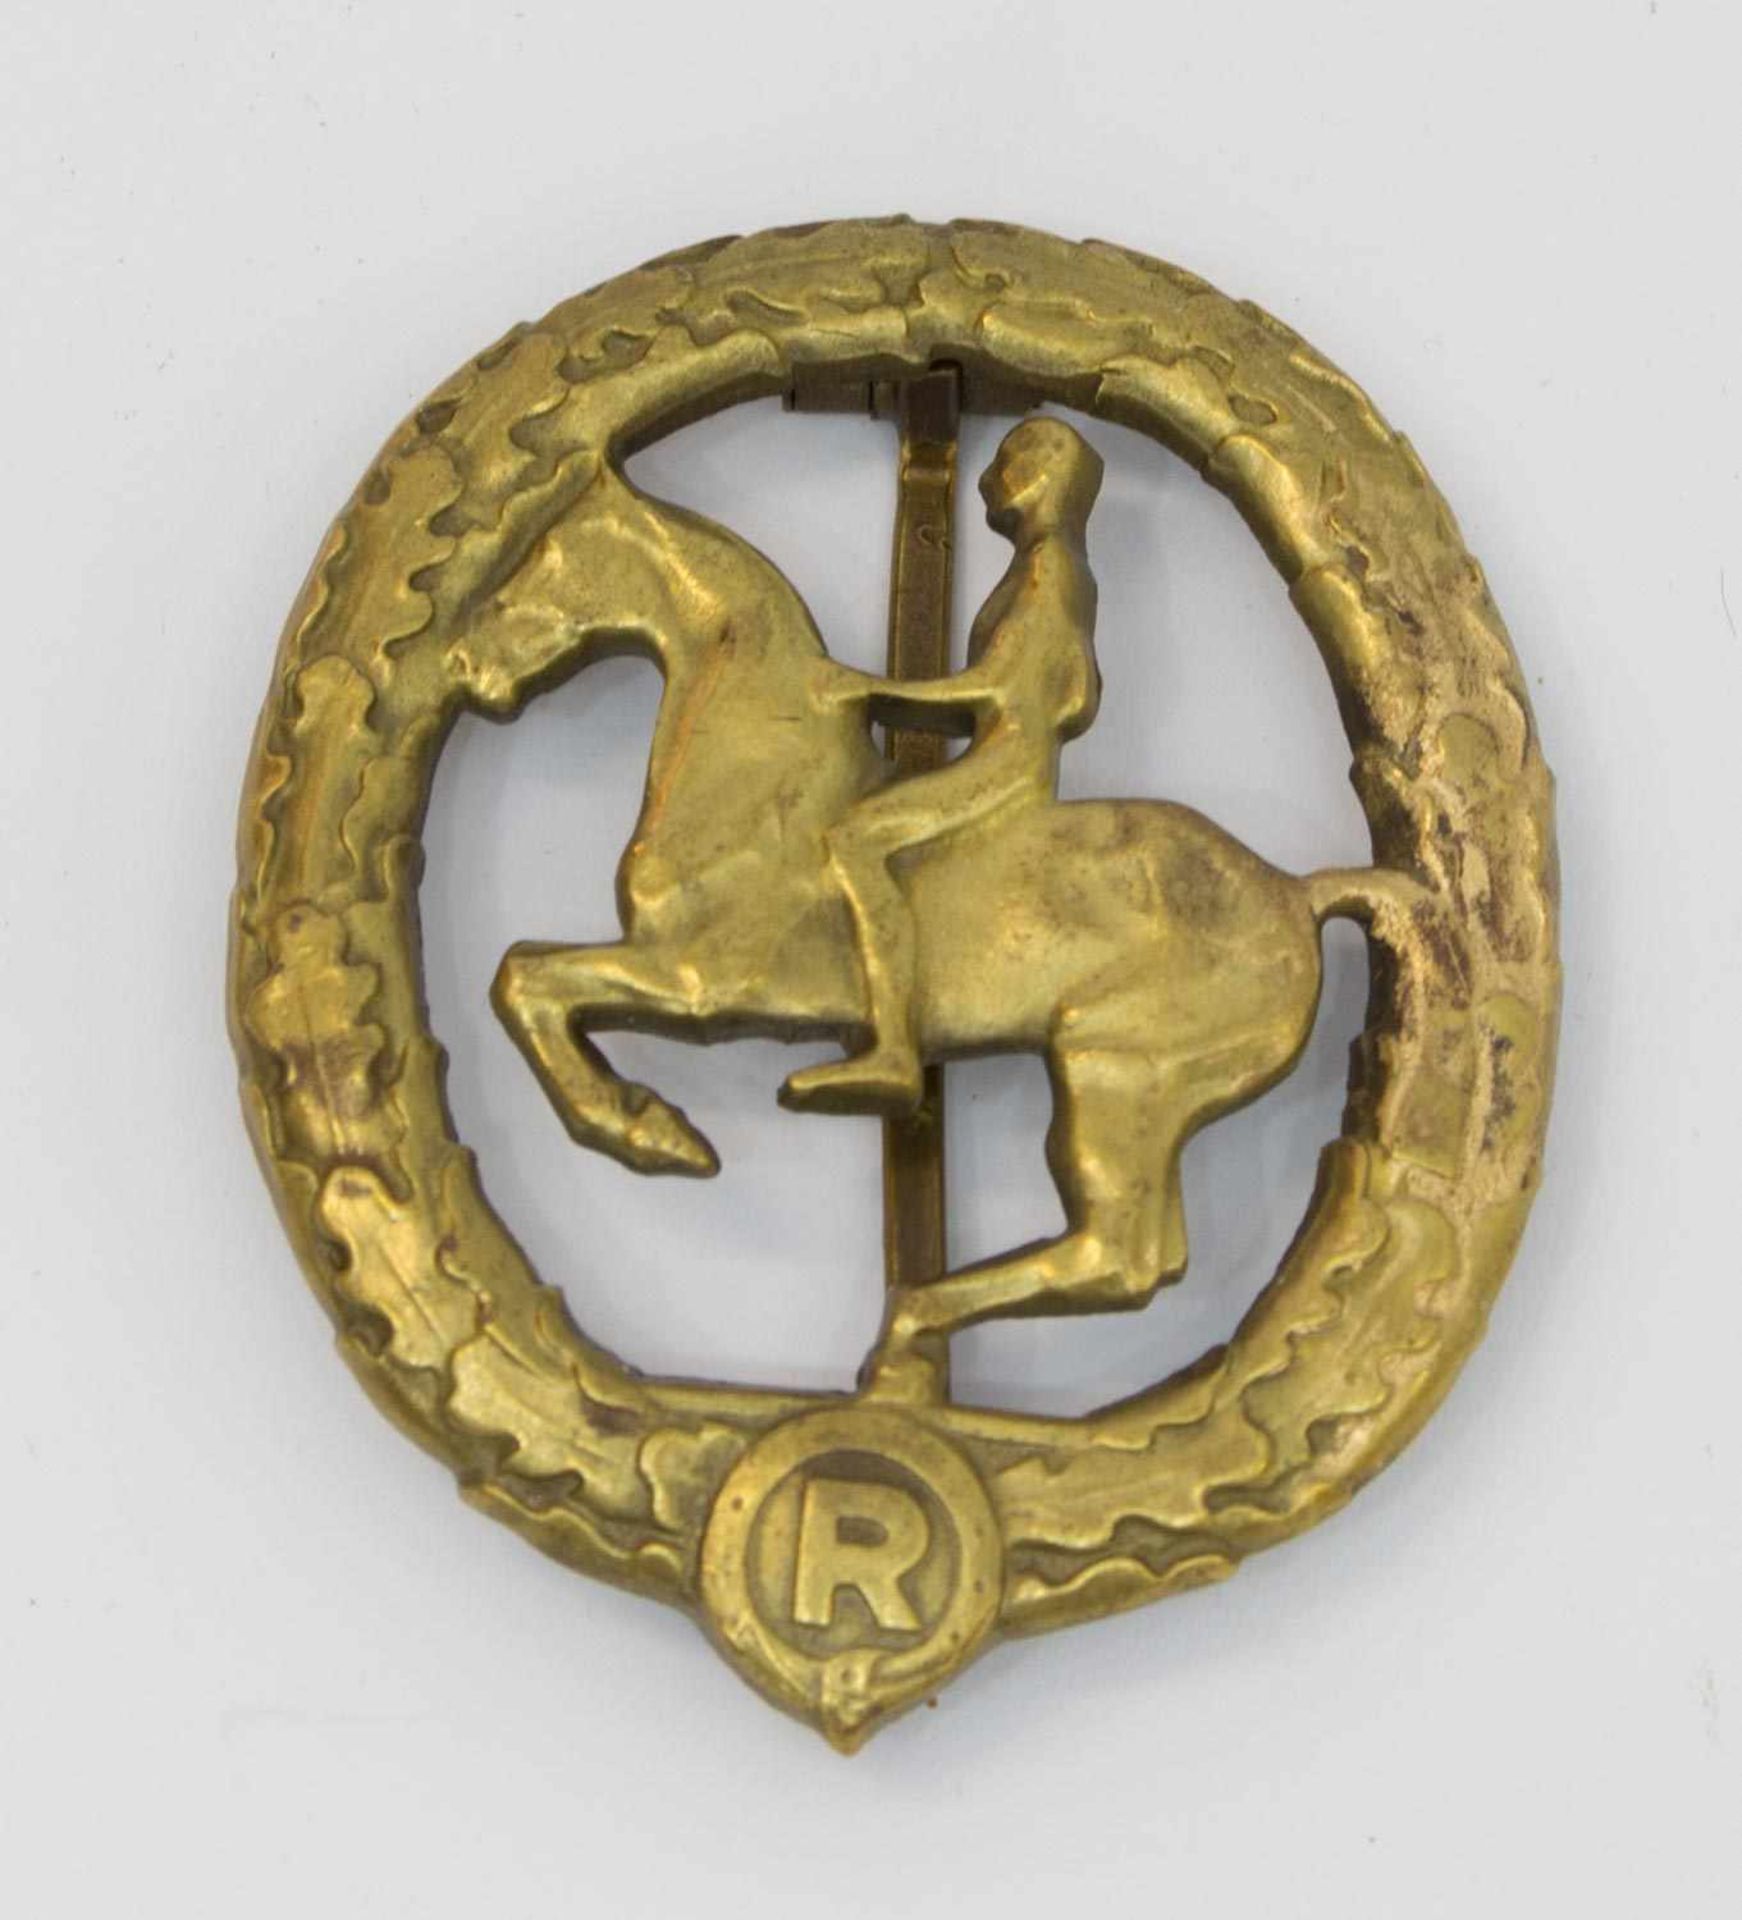 Deutsches Reiterabzeichen III. Reich, Klasse 3 in Bronze, Herst. L.Chr. Lauer Nürnberg-Berlin